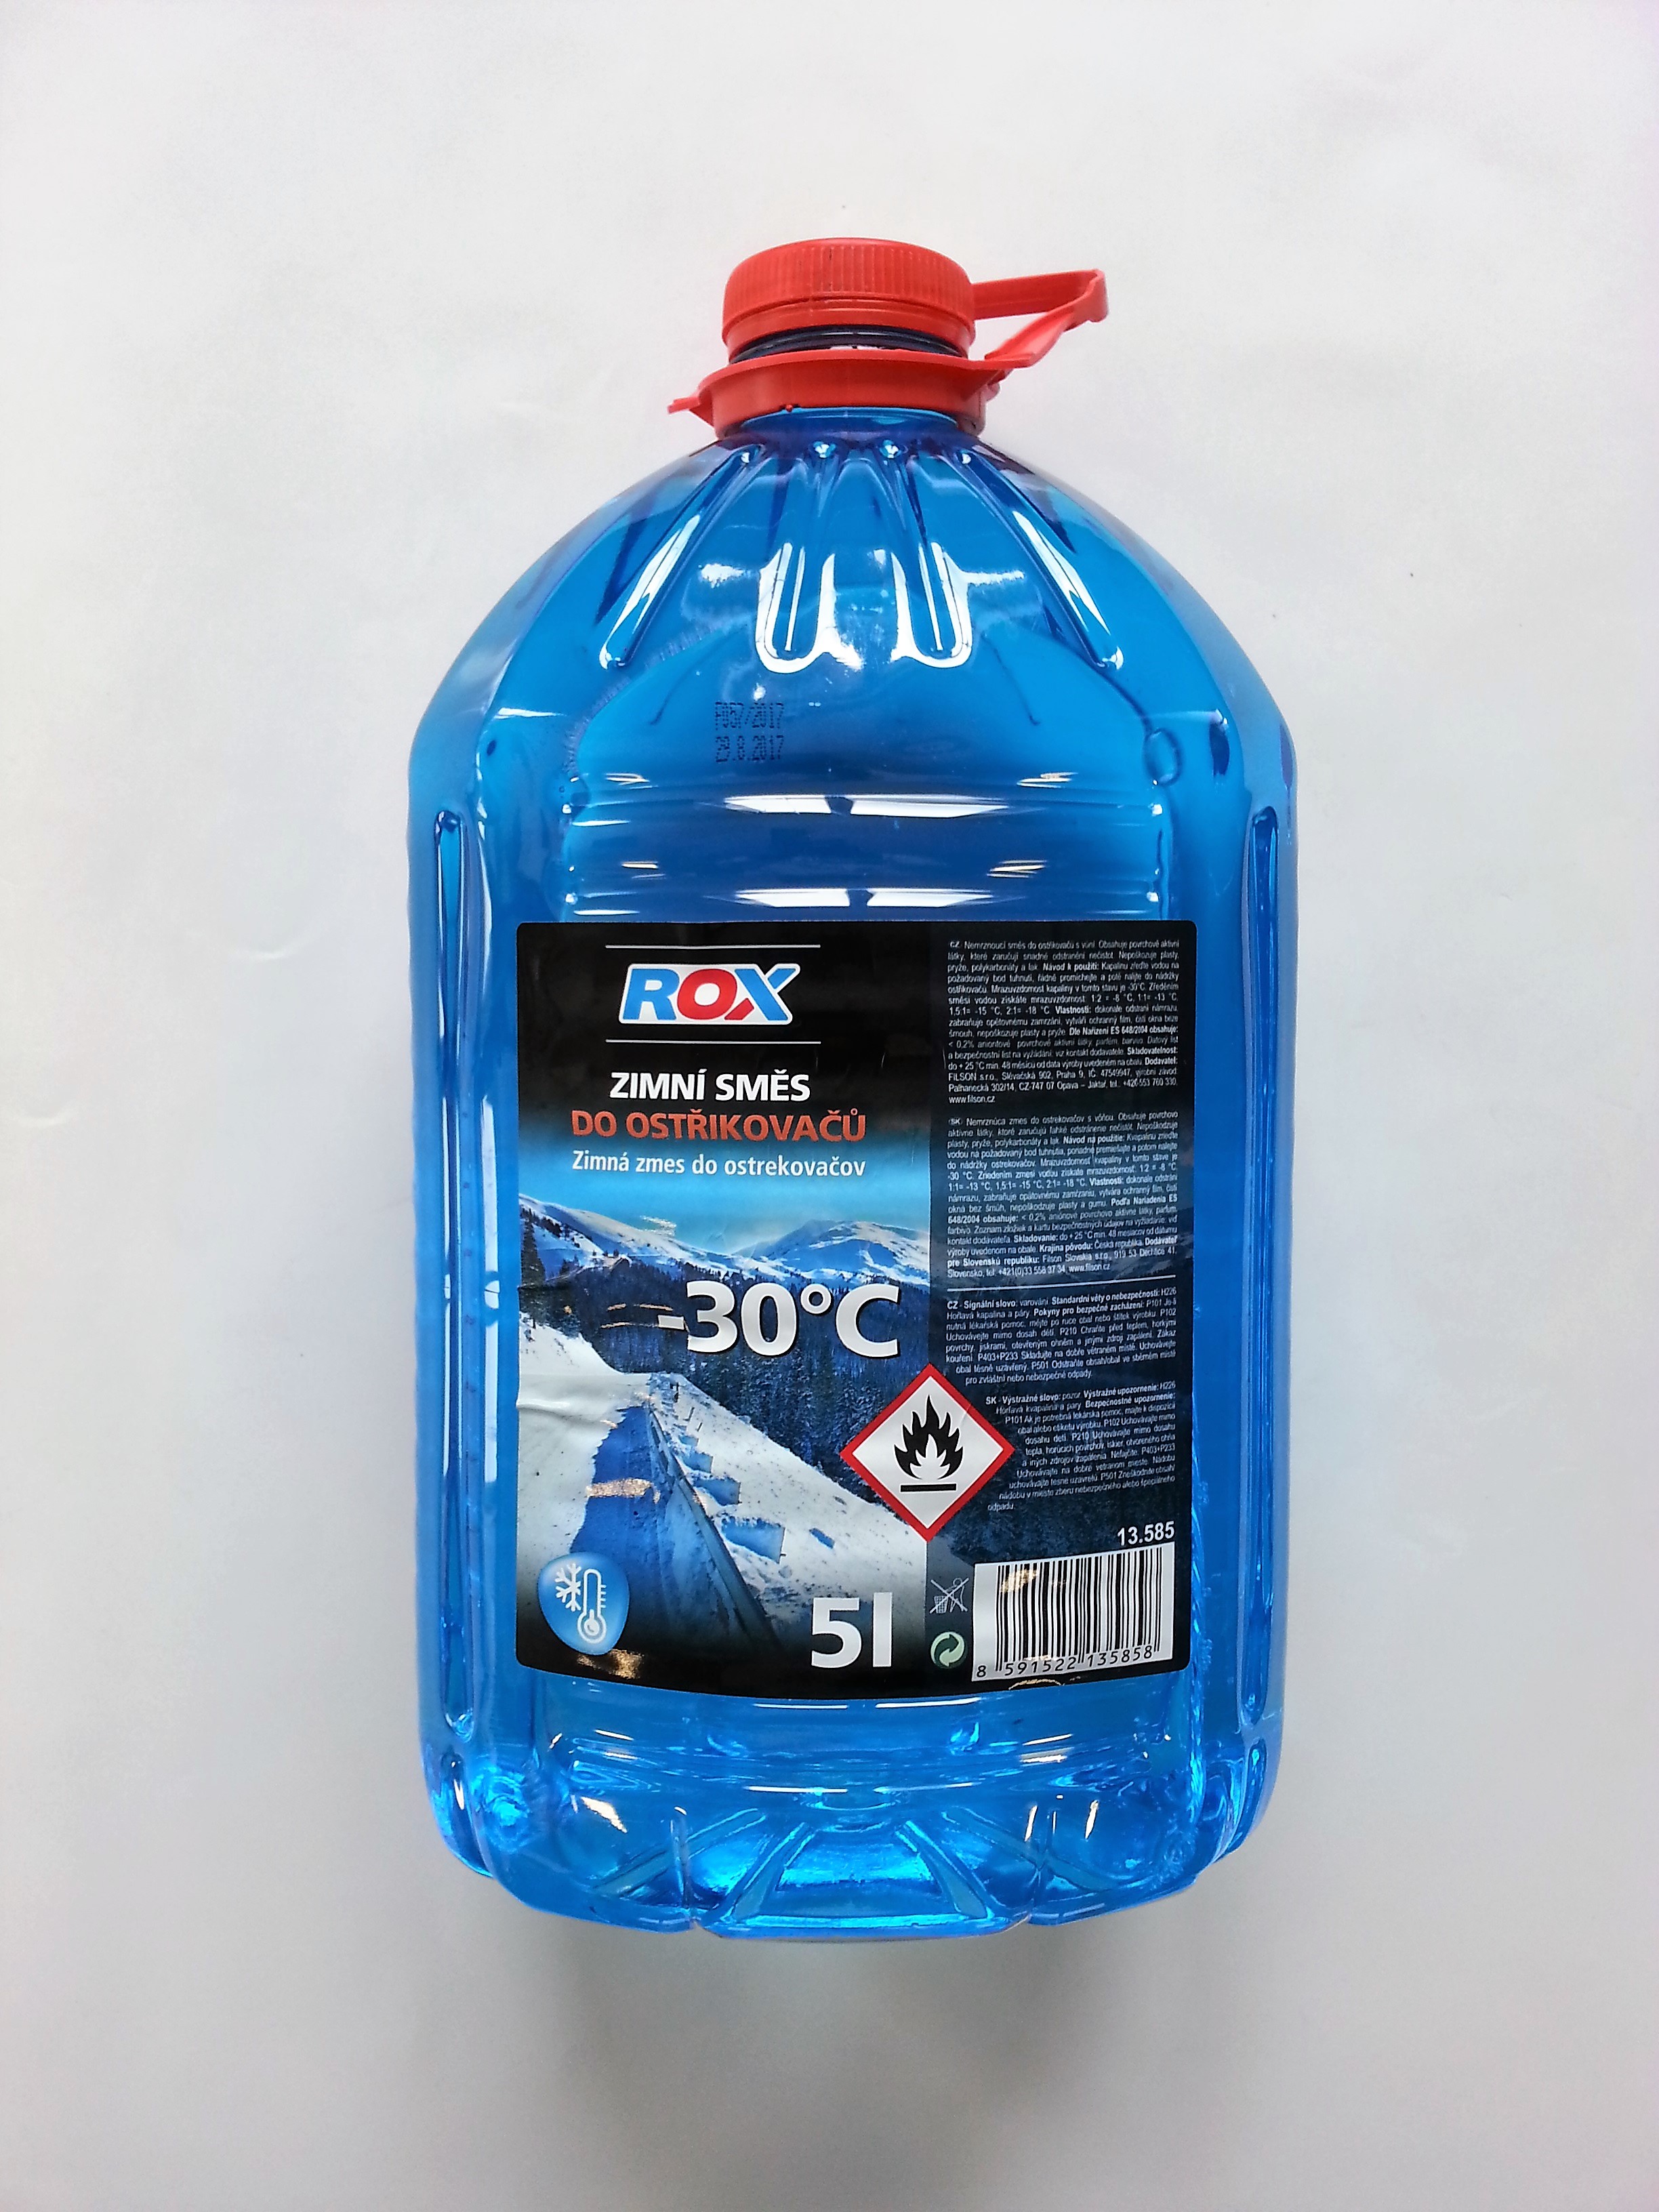 Nemrznoucí směs do ostřikovačů ROX -30°C, 5L 31.123